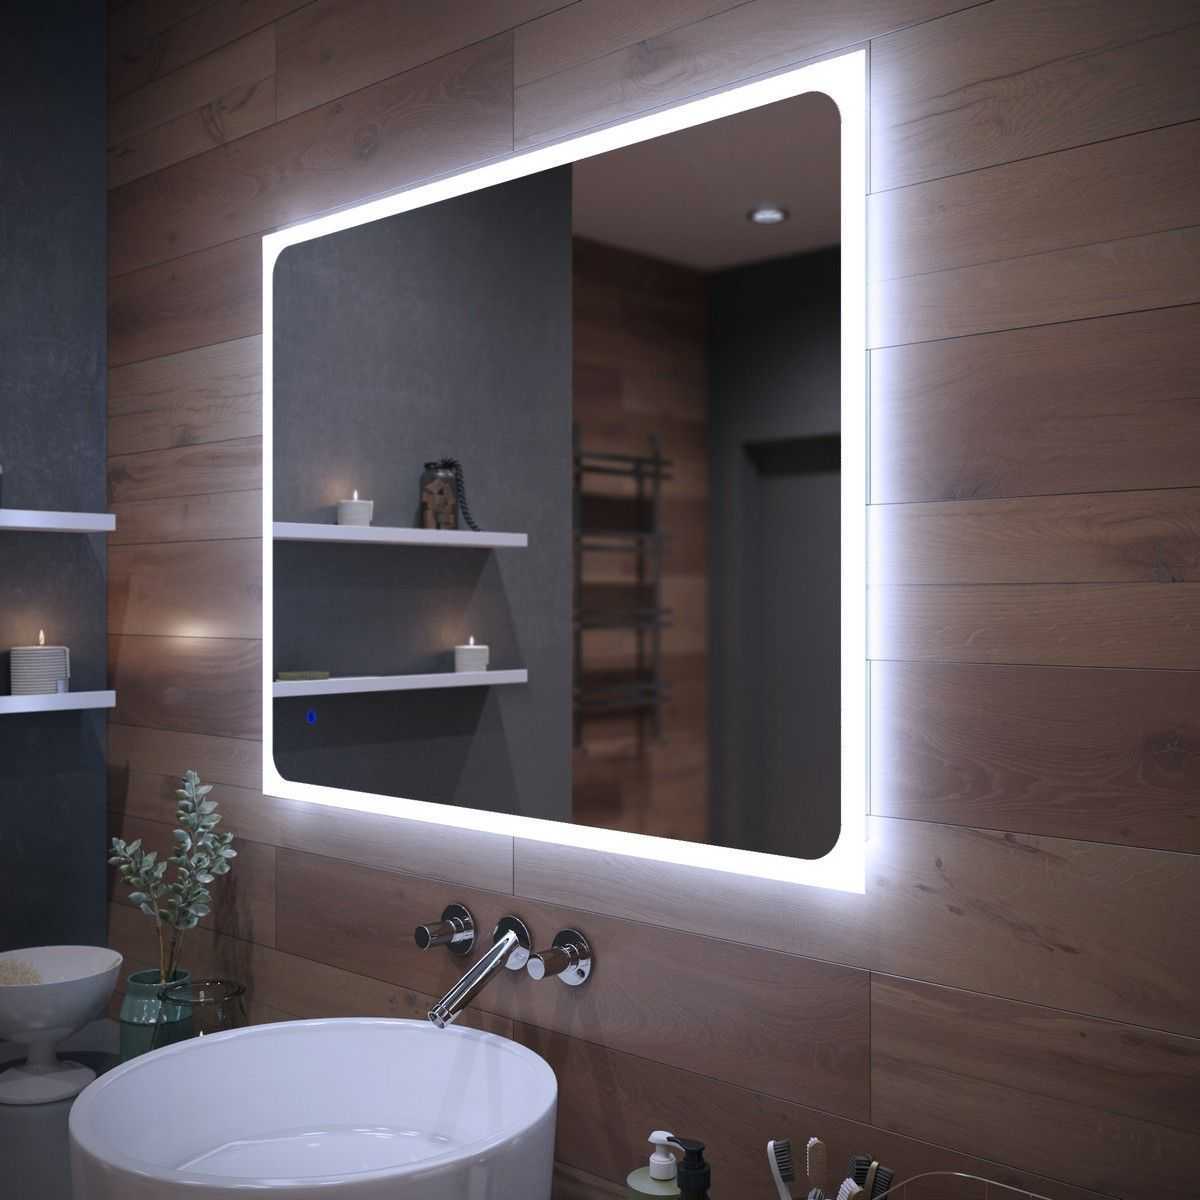 Круглое зеркало с подсветкой для ванной — особенности, достоинства и недостатки